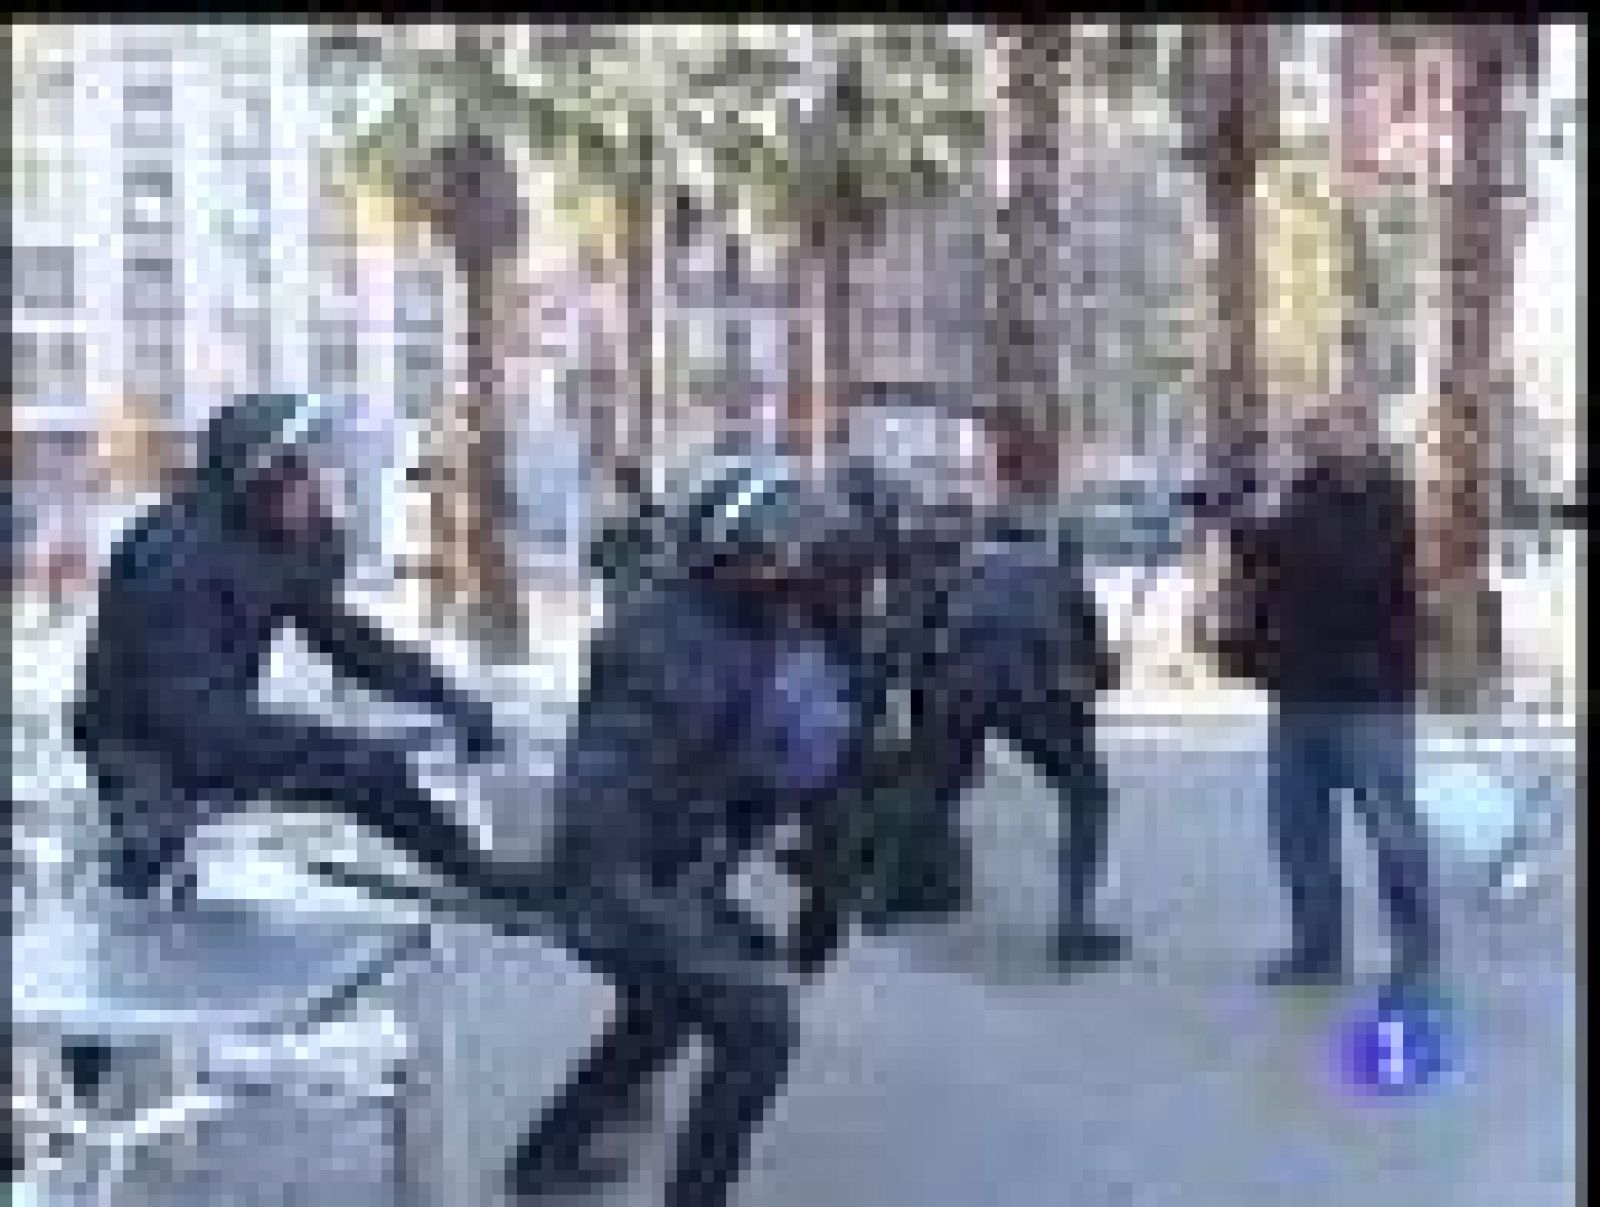 Después de que los Mossos d'Esquadra cargaran contra un grupo de estudiantes anti-Bolonia, que había sido desalojado del rectorado de la Universidad de Barcelona. Hay seis estudiantes detenidos y varios heridos,  entre ellos 5 mossos de esquadra.